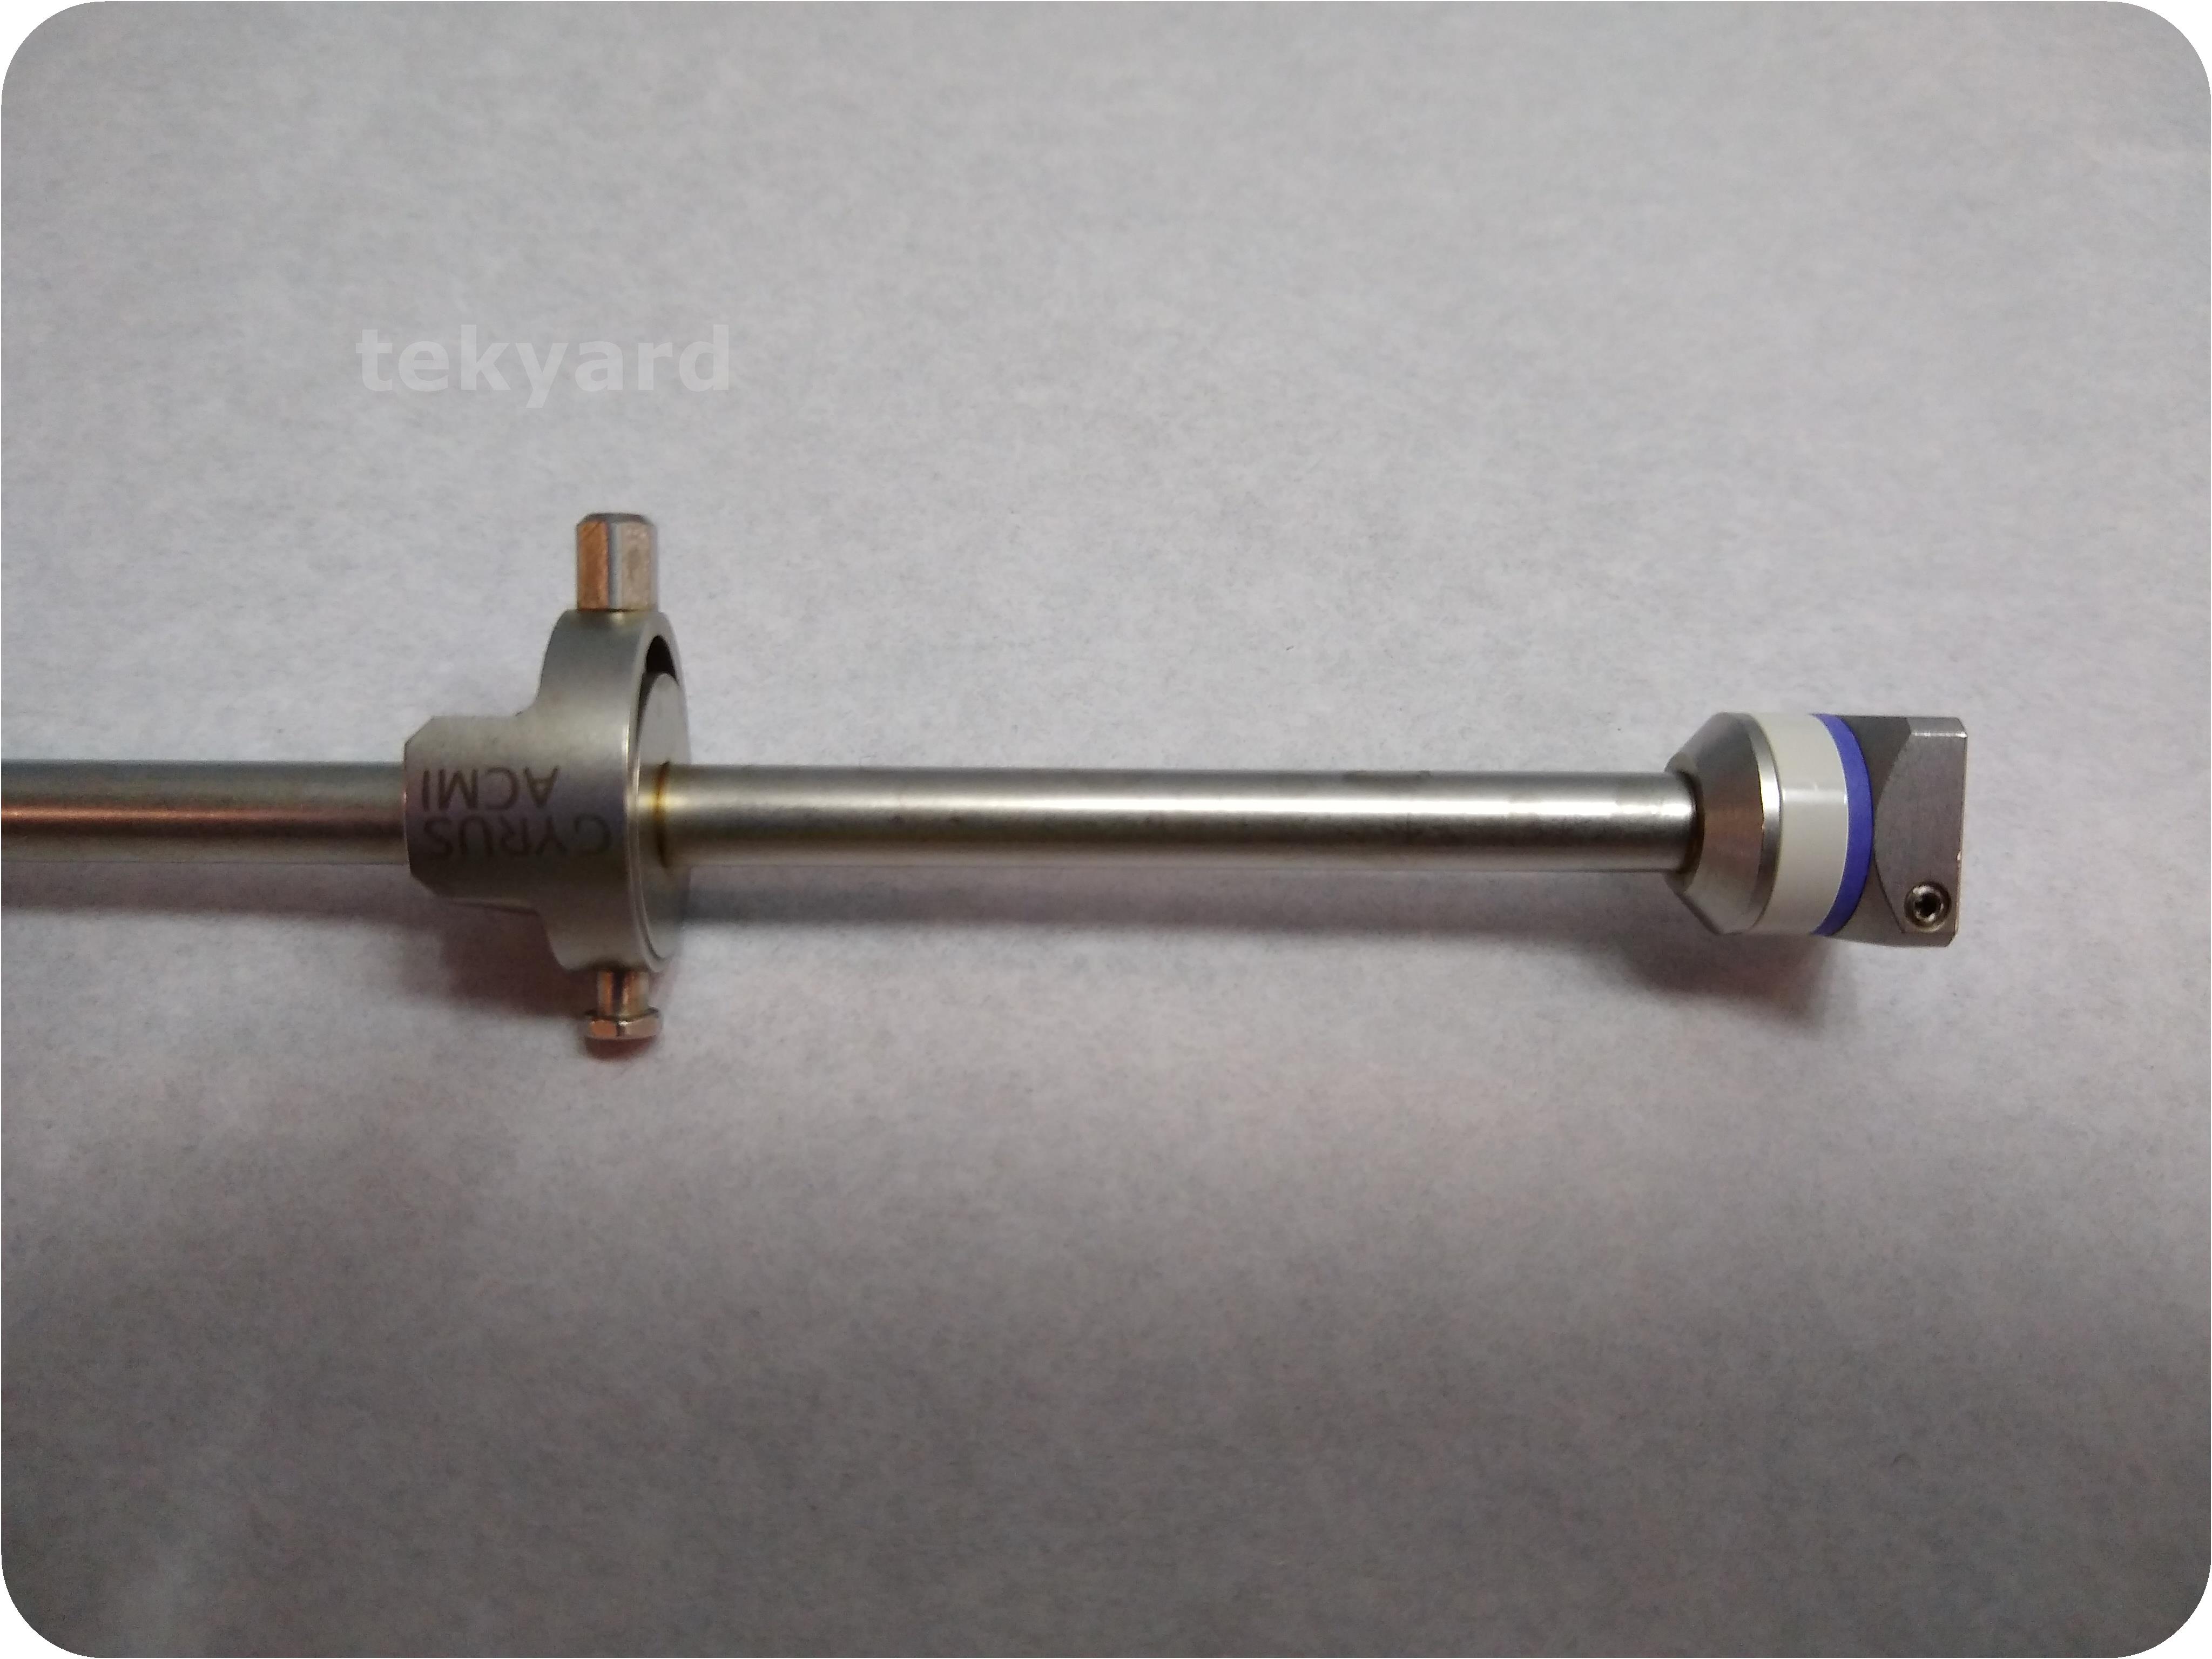 tekyard, LLC. - 250554-Gyrus ACMI GYS-5, GYB-5, GYA-5 Semi Rigid